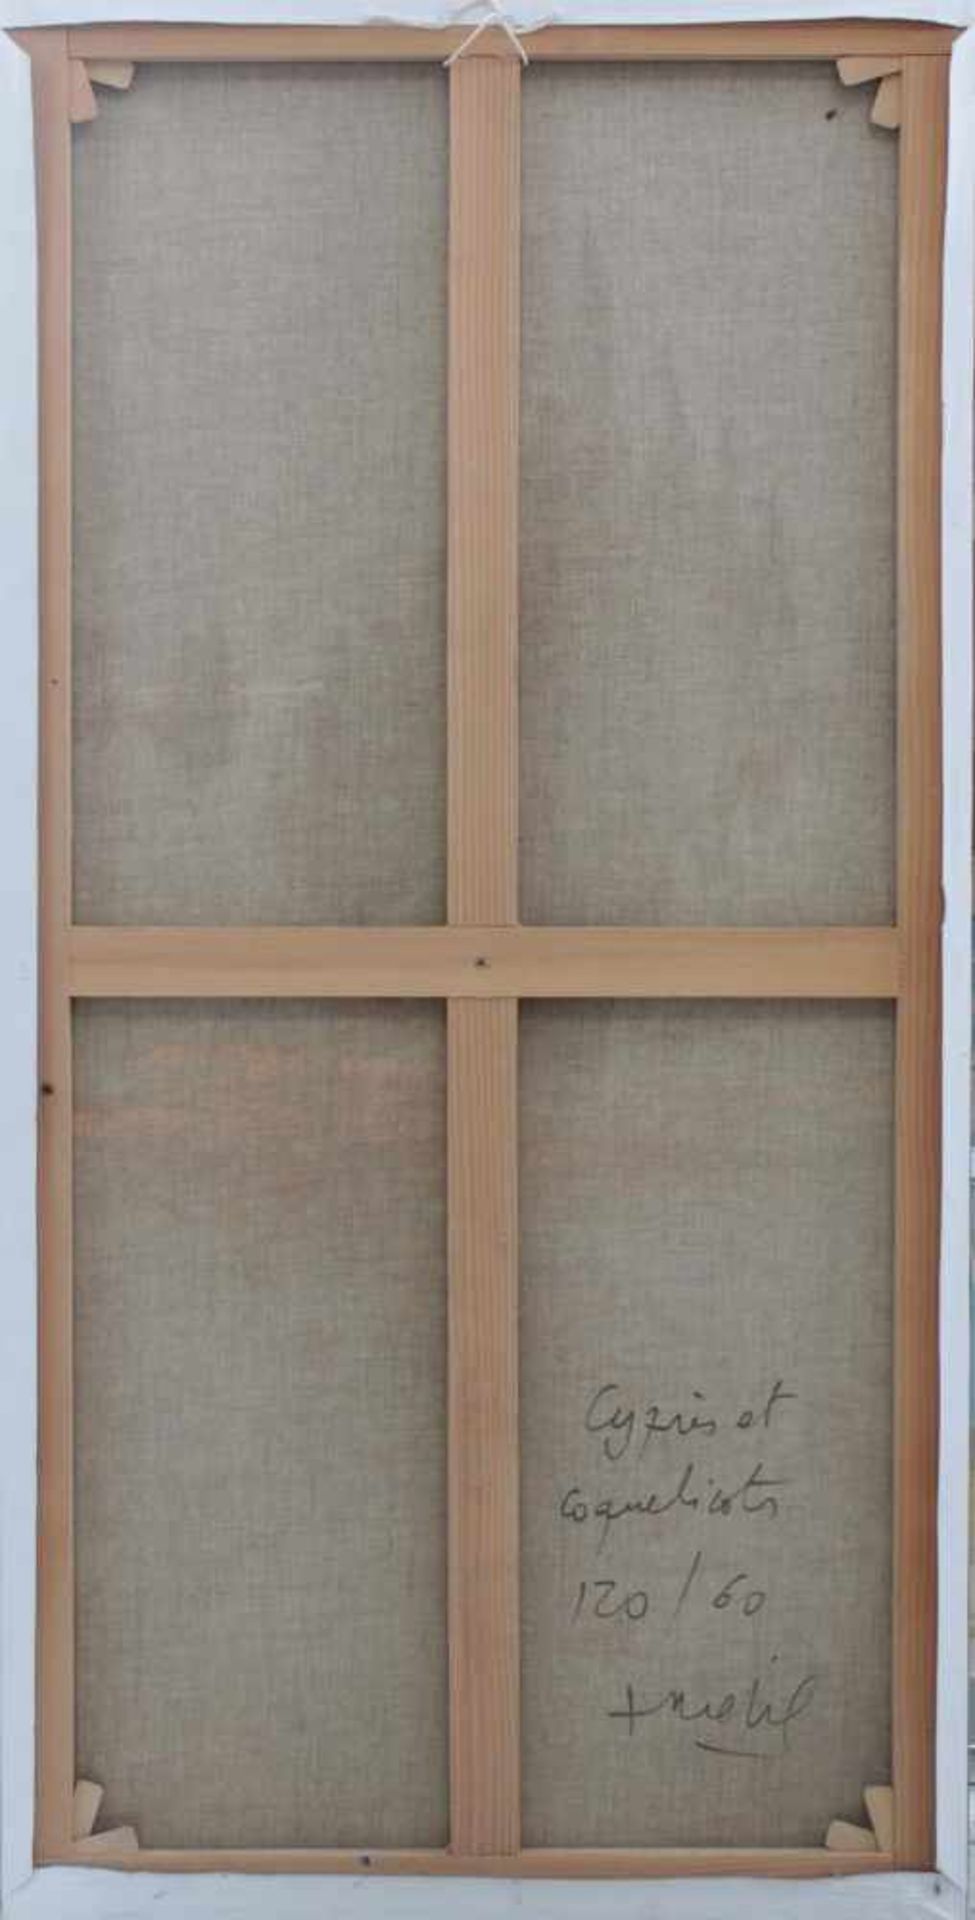 F. Riehel, Zeitgenössischer Künstler. "Cyprien et Coquelicots"Öl auf Leinwand, unten rechts signiert - Image 3 of 3